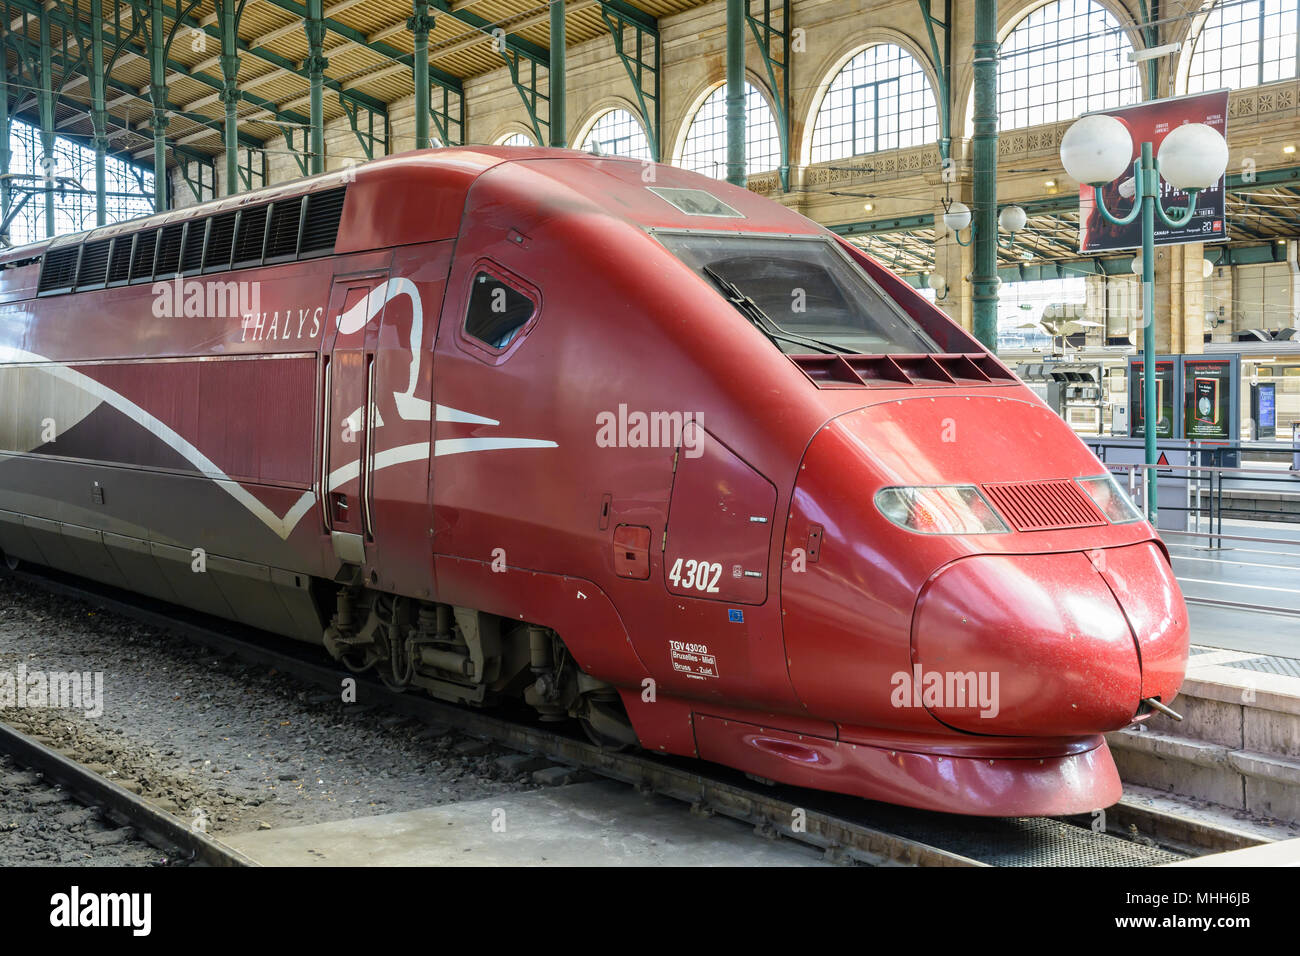 Lokomotive eines Thalys Hochgeschwindigkeitszüge, die von ALSTOM gebaut und von europäischen Konsortium Thalys International in Paris Gare du Nord Station stationiert. Stockfoto